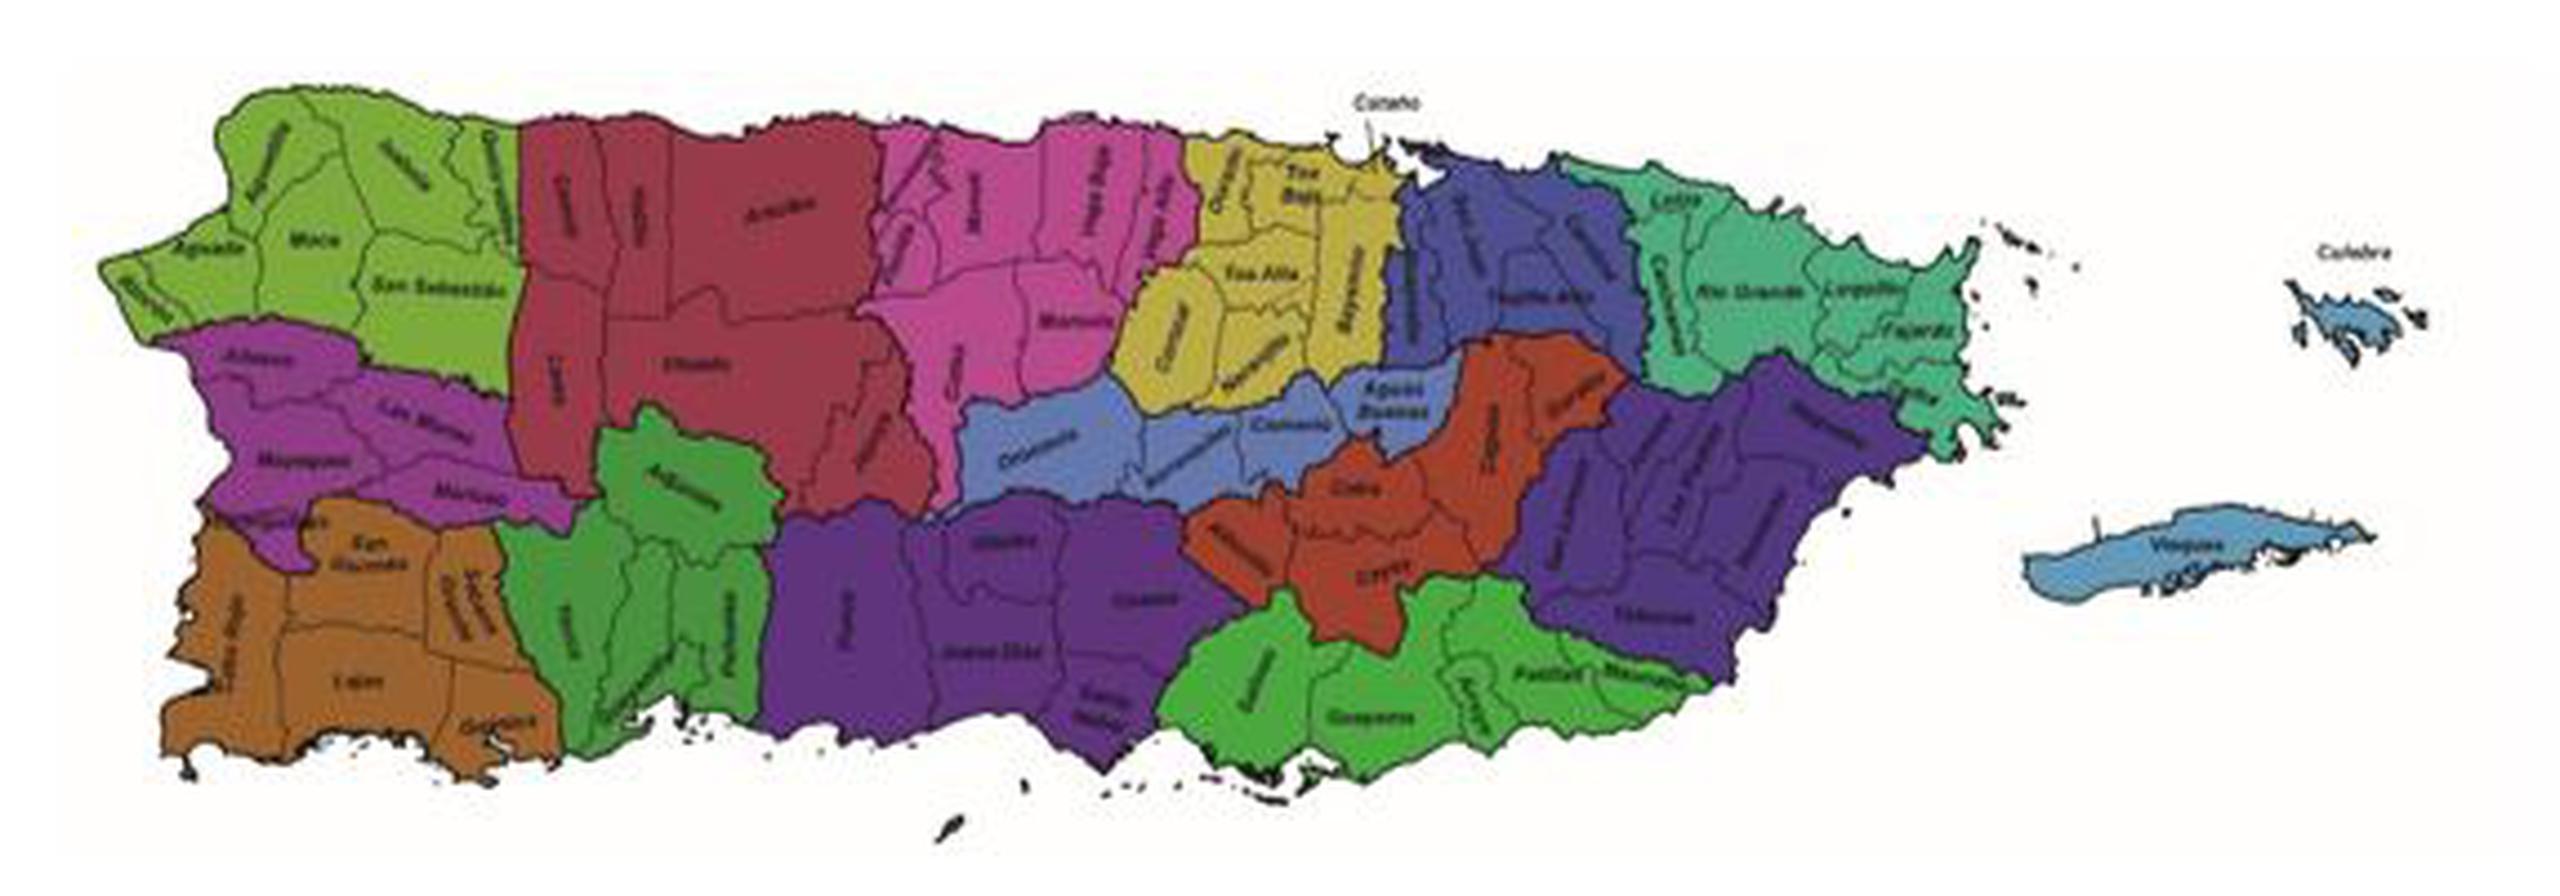 Mapa de la isla. (Suministrada)